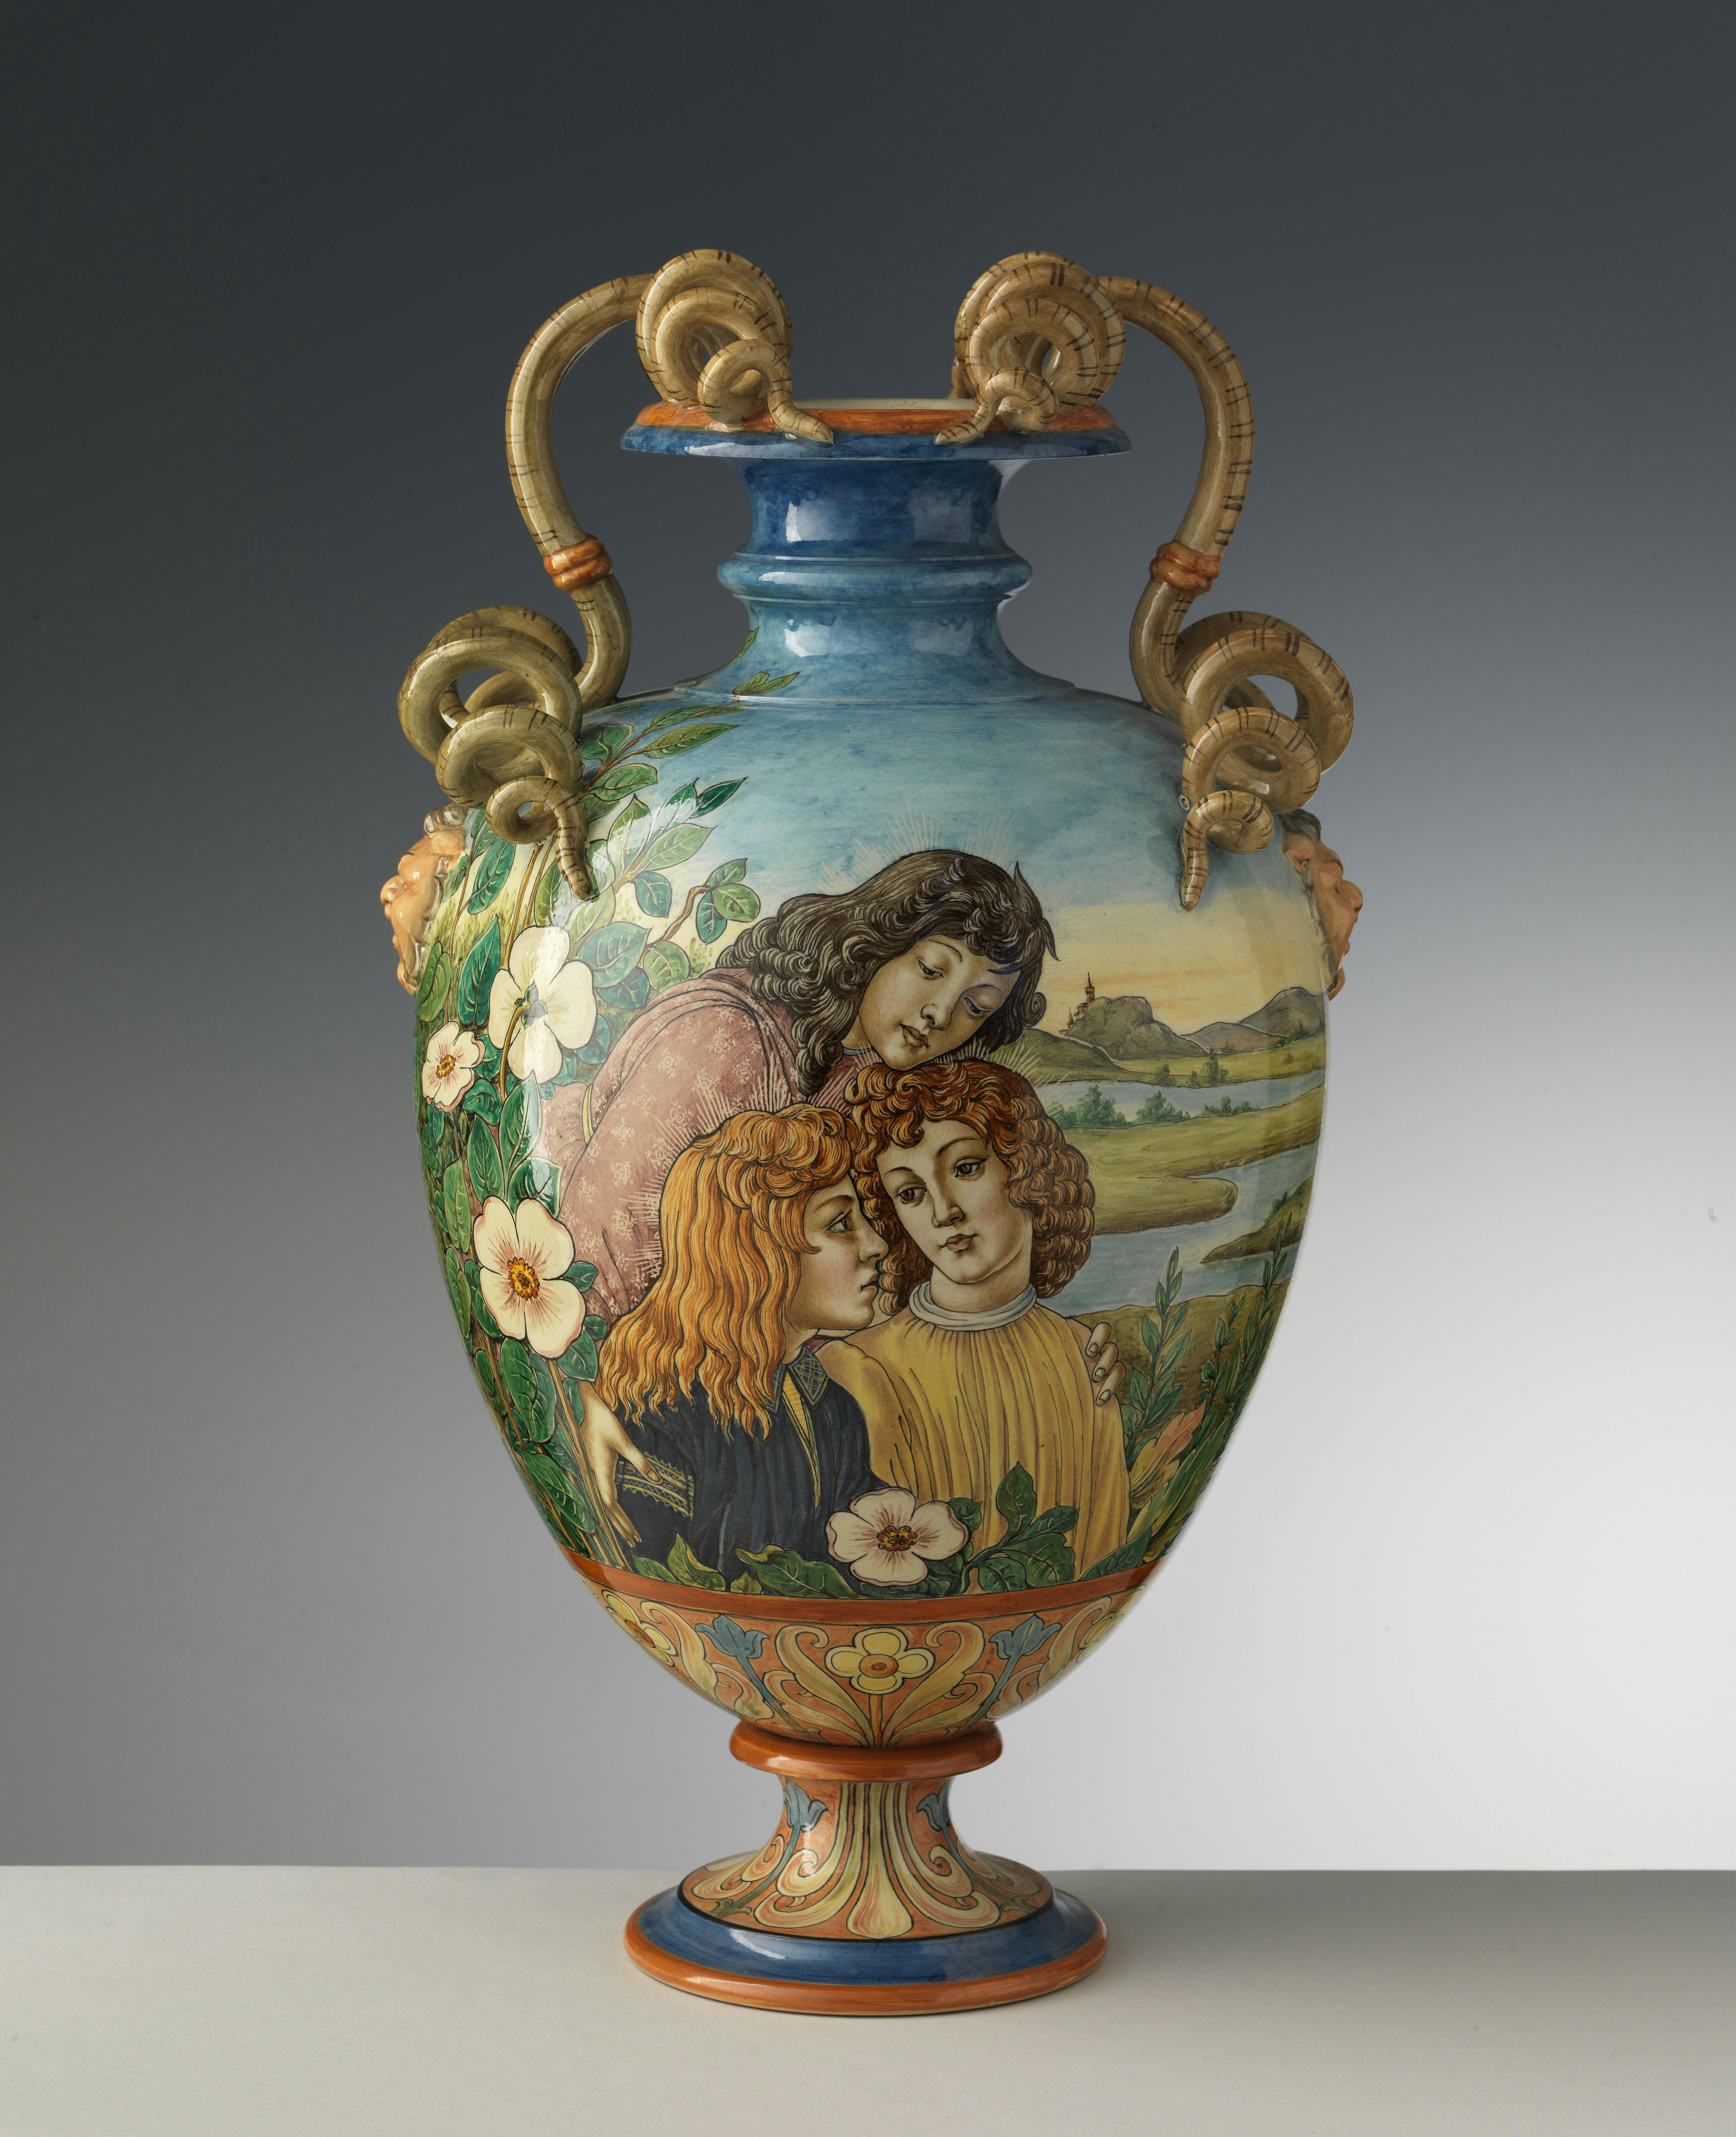 Sul vaso sono raffigurati tre fanciulli molto vicini tra loro, fiori bianchi e un paesaggio